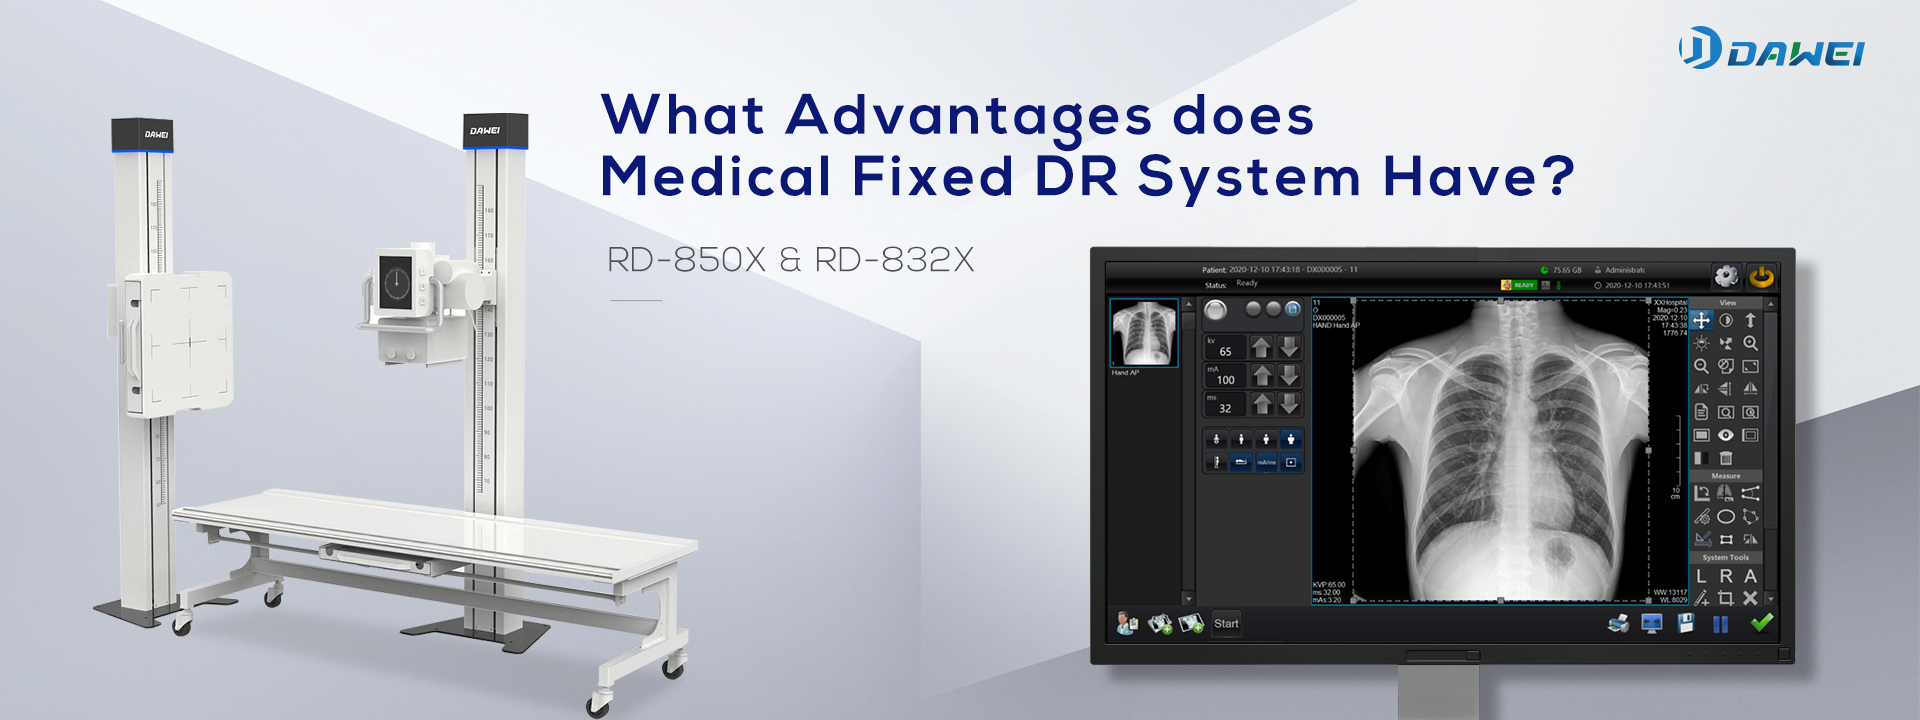 Koje prednosti ima medicinski fiksni DR sustav?